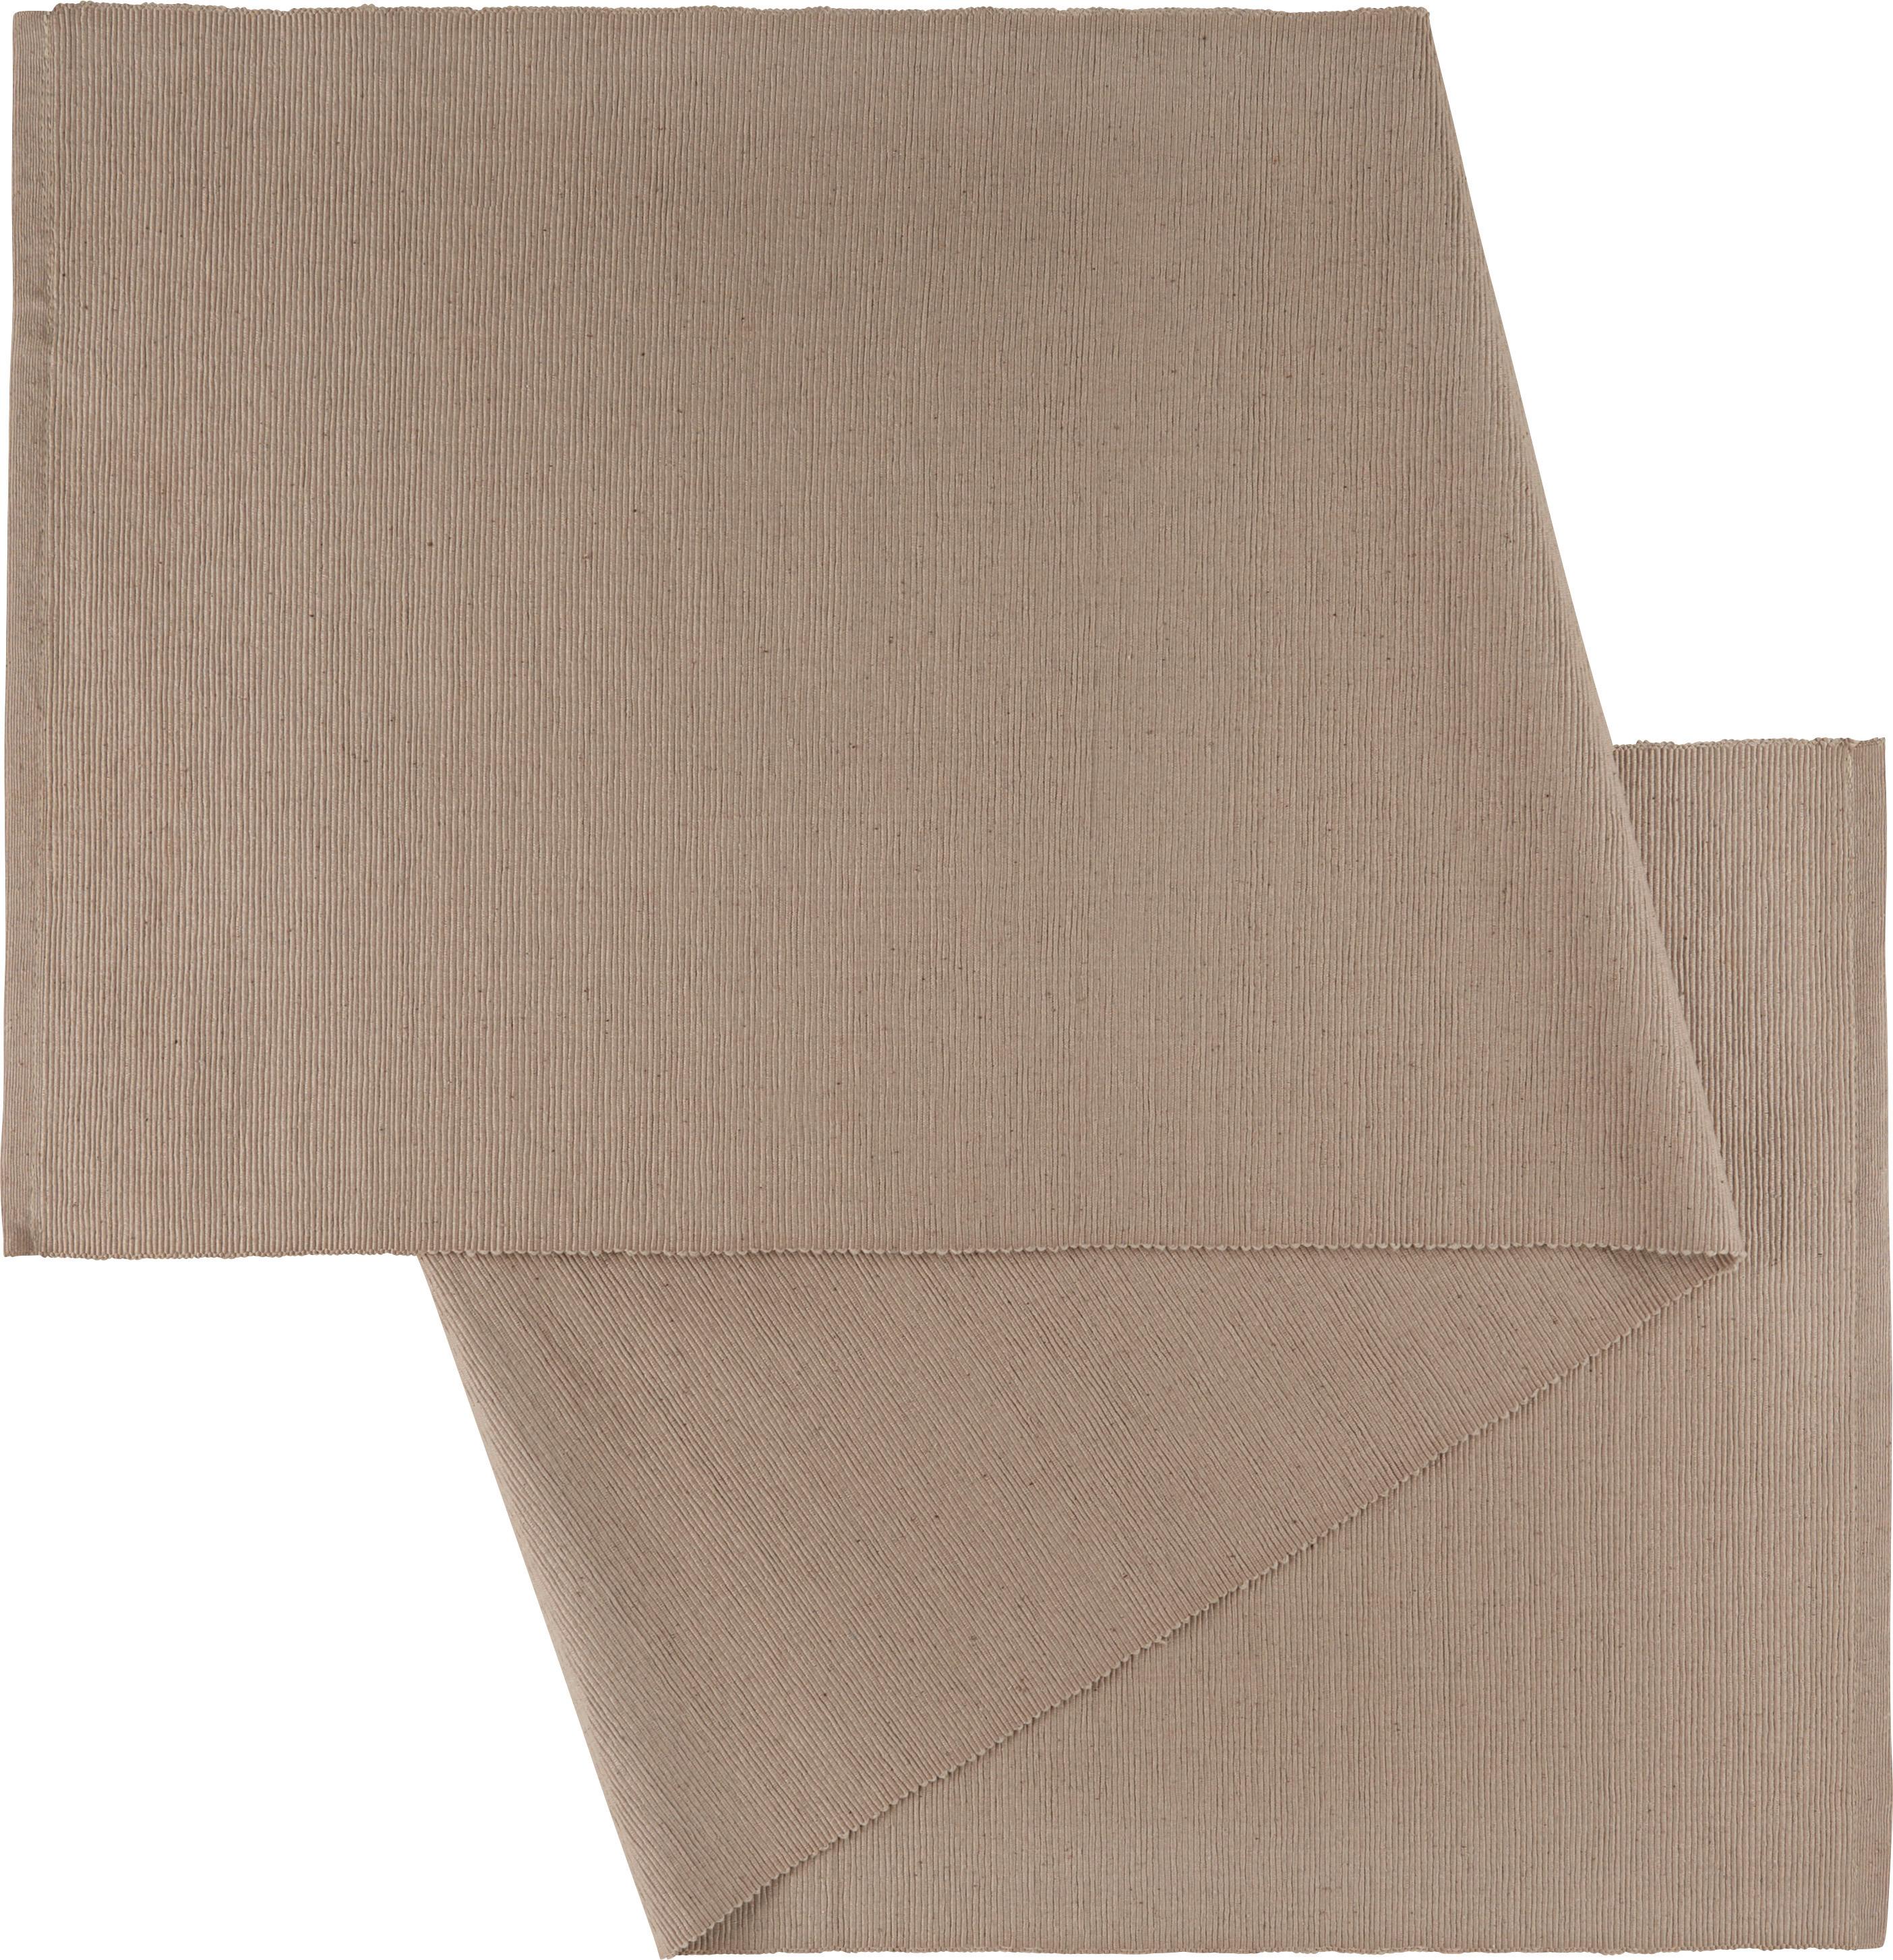 Traversă de masă Maren - bej, textil (40/150cm) - Modern Living